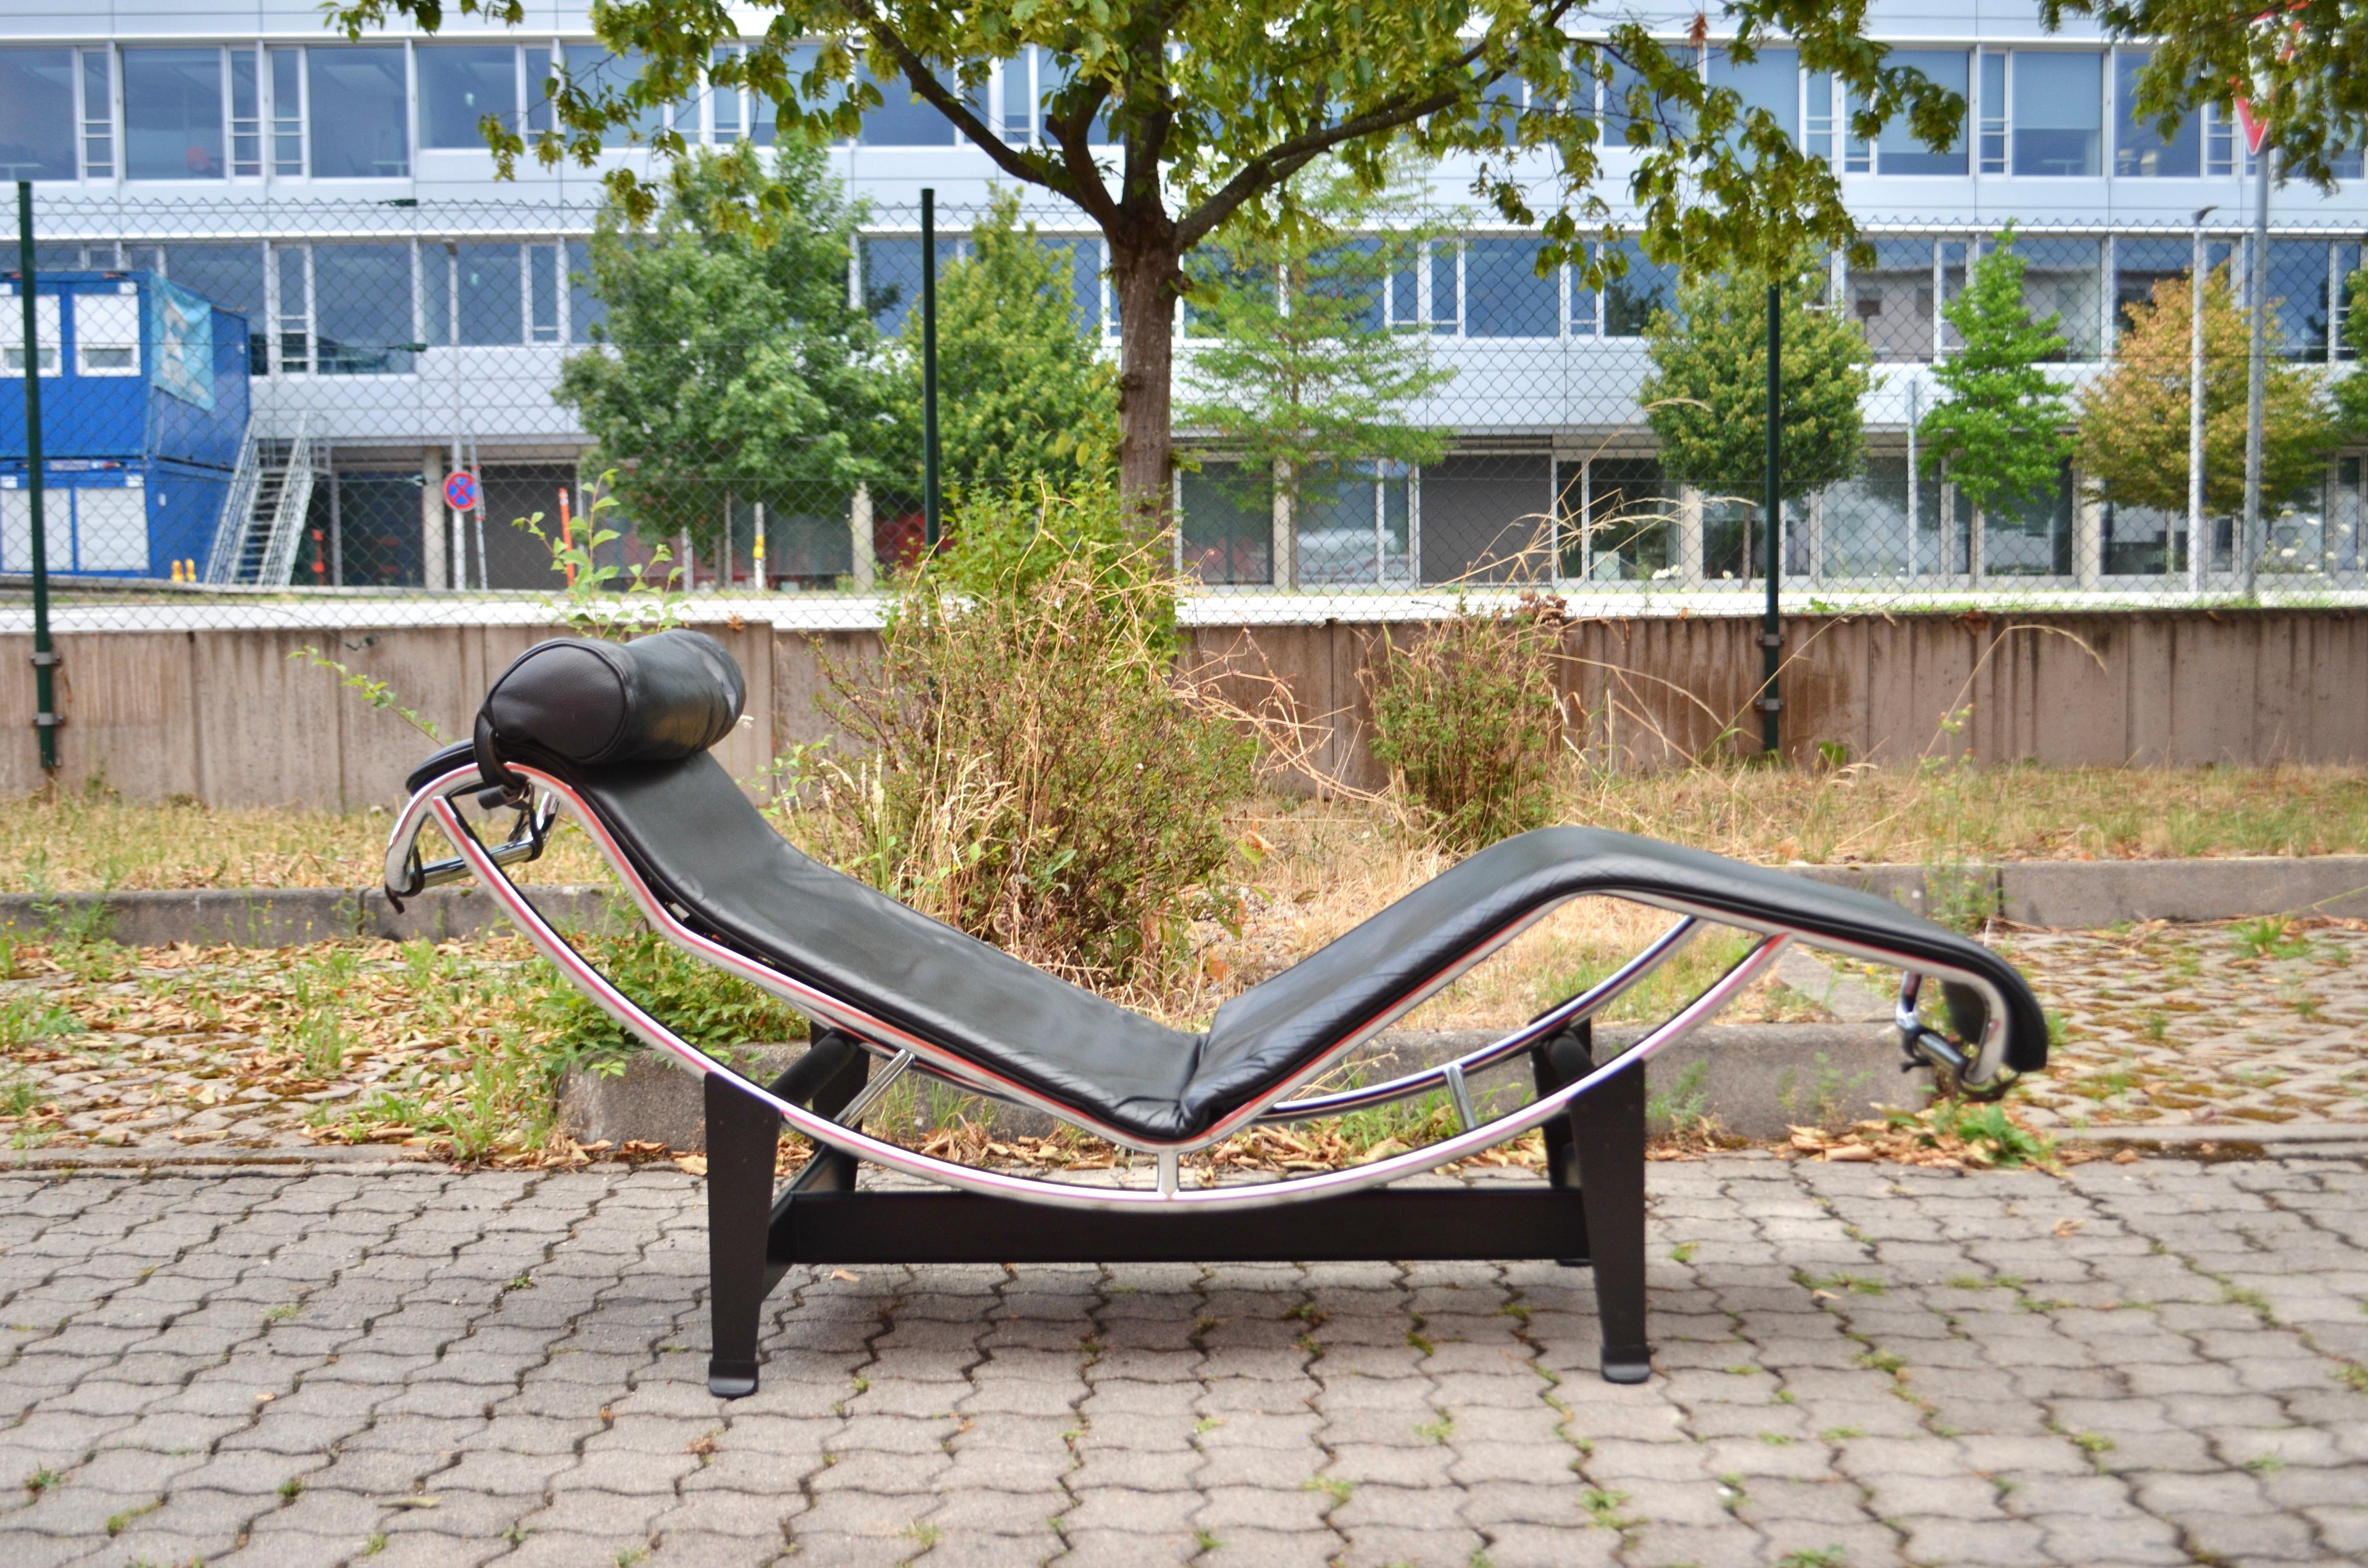 Cette chaise longue LC4 en cuir noir a été conçue par Le Corbusier/ Pierre Jeanneret/ Charlotte Perriand et produite par Cassina.
Il est doté d'un cadre classique en acier chromé et d'une base industrielle noire.
Le cuir est en bon état.
Le siège